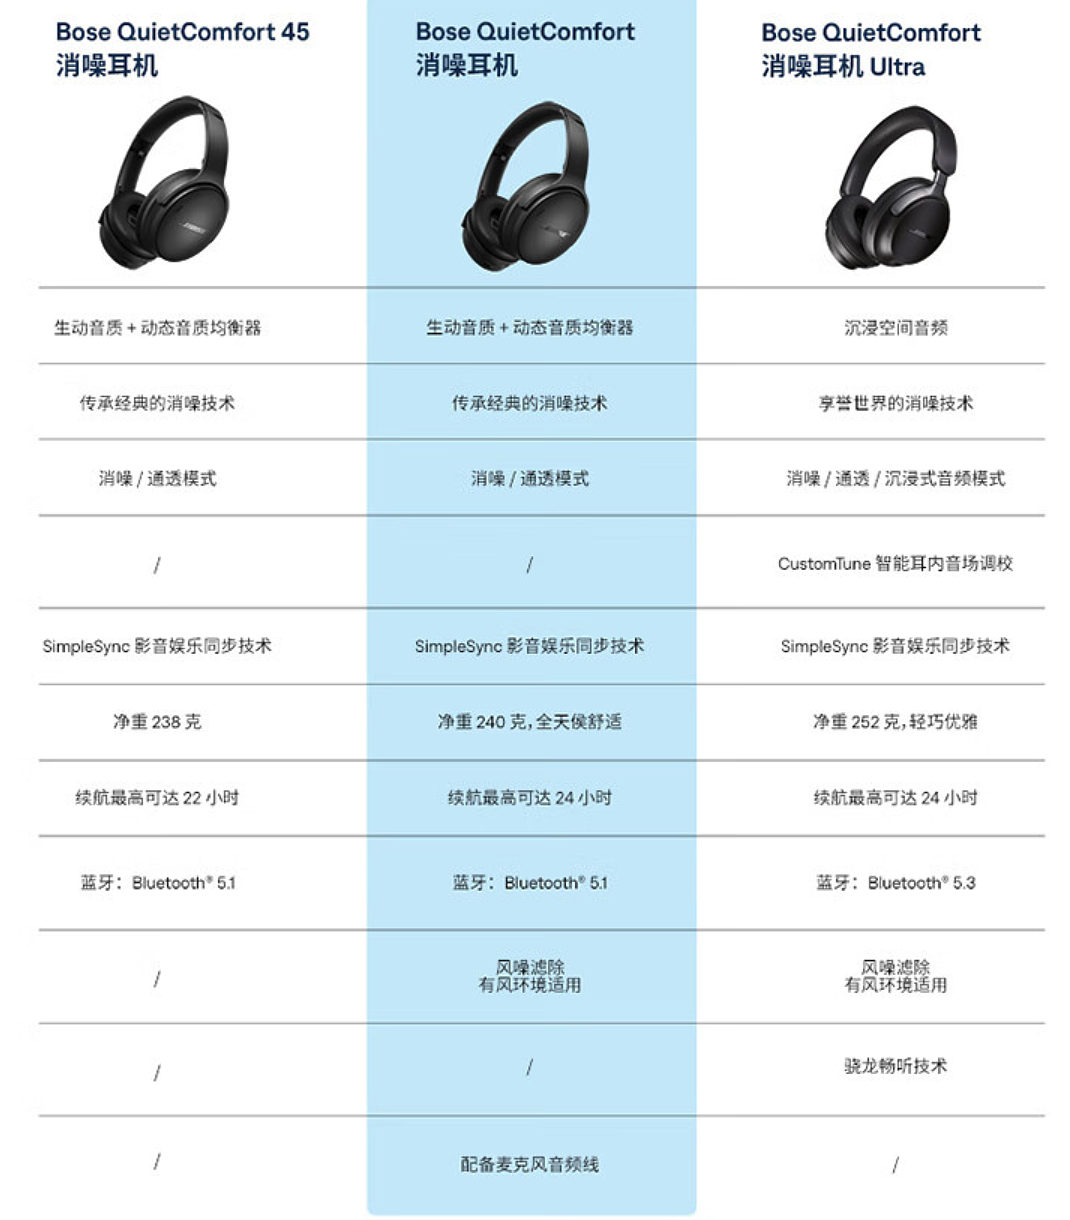 【IT之家开箱】Bose QuietComfort 消噪耳机 Ultra 图赏 - 15